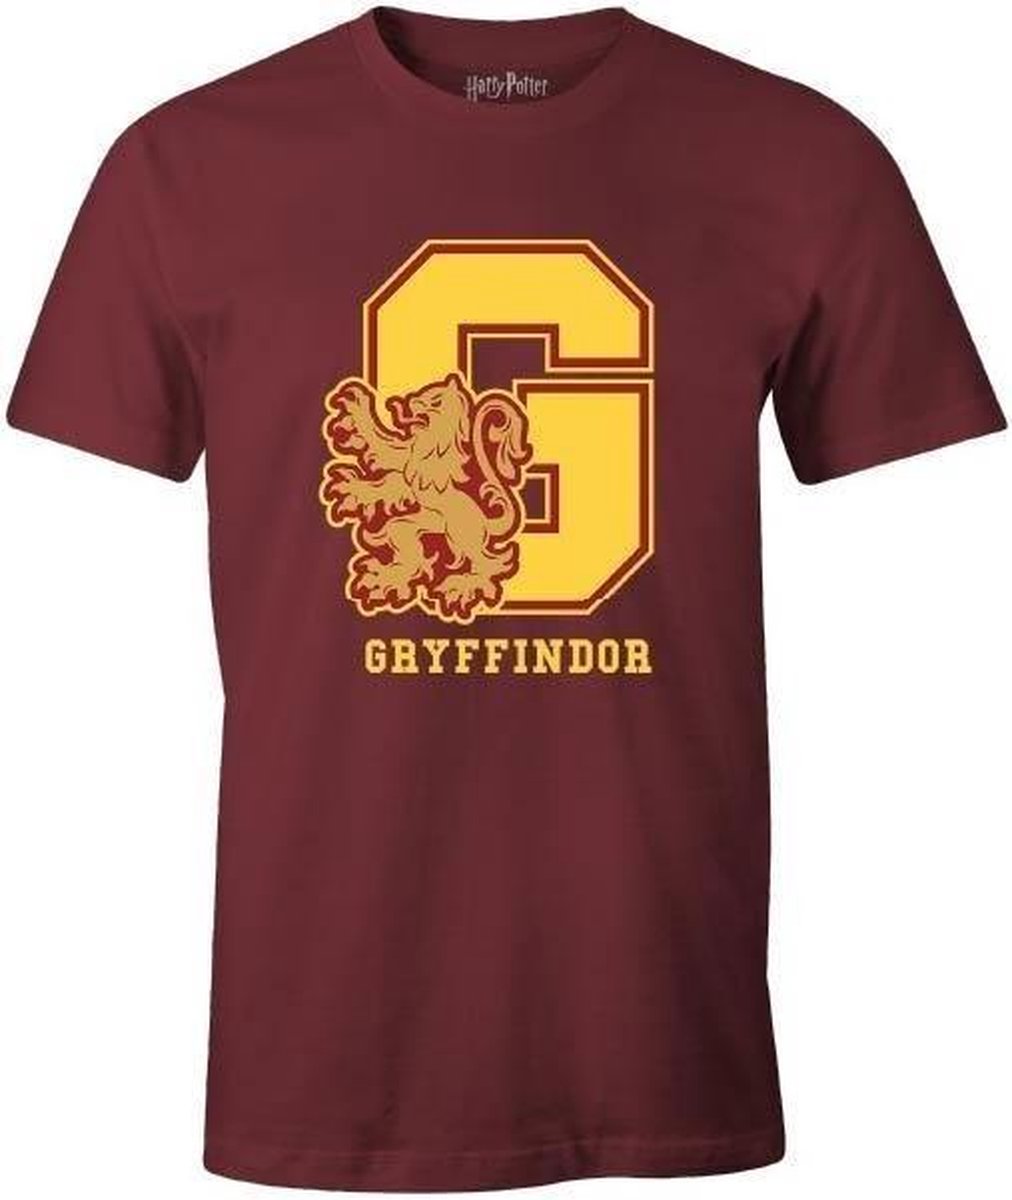 Harry Potter - Burgundy Men's T-shirt - G Gryffindor - L